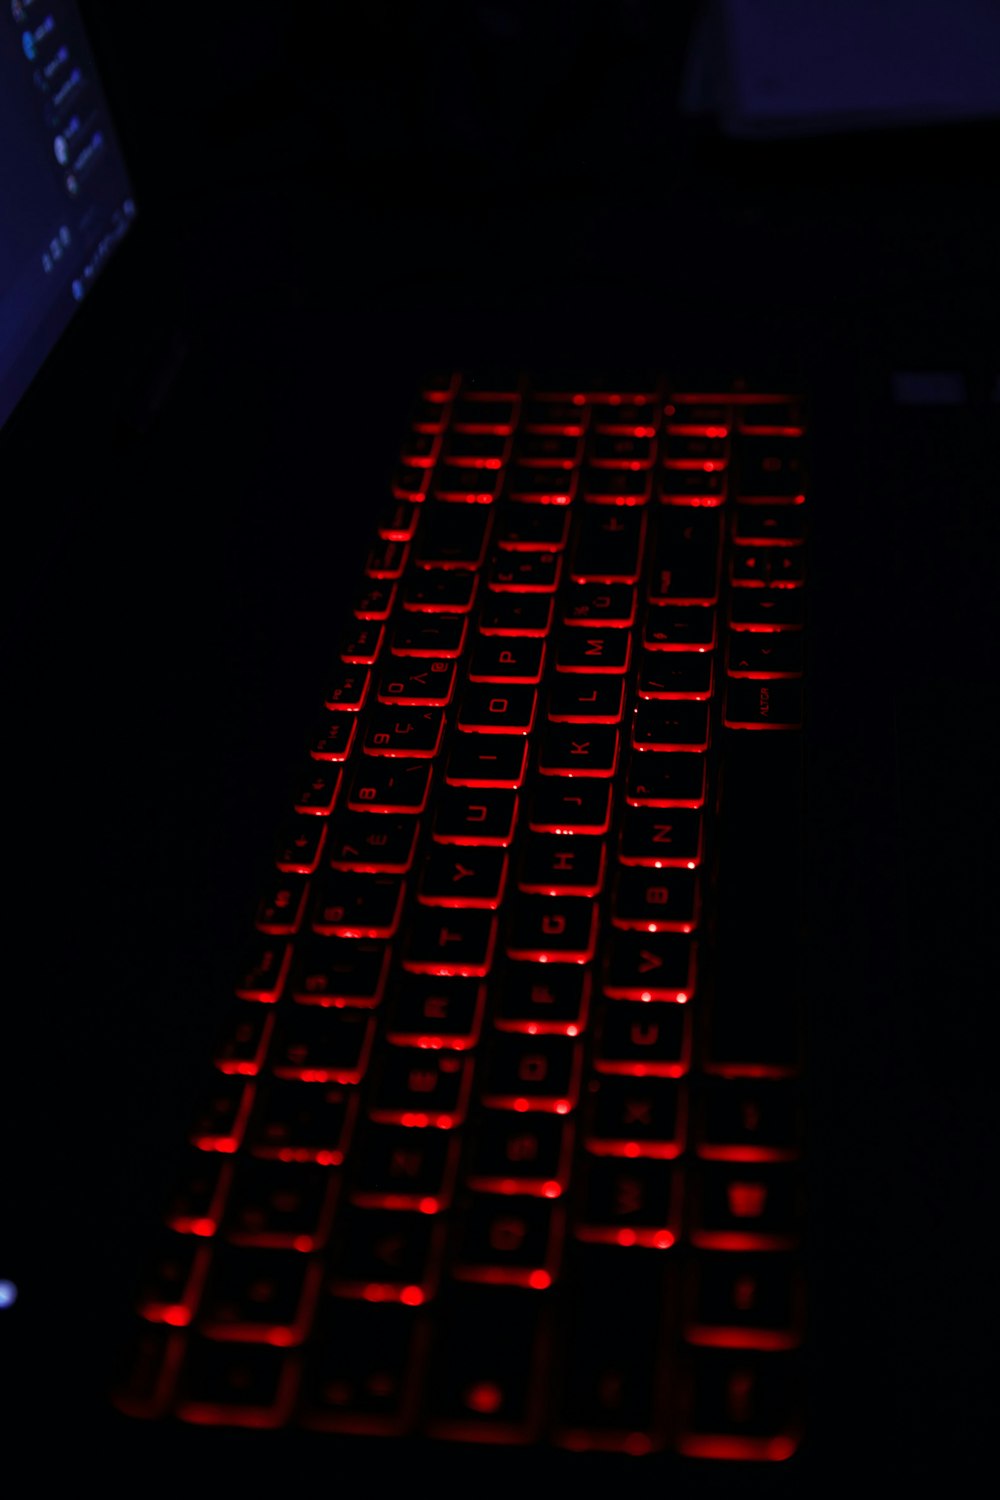 tastiera del computer nera e rossa